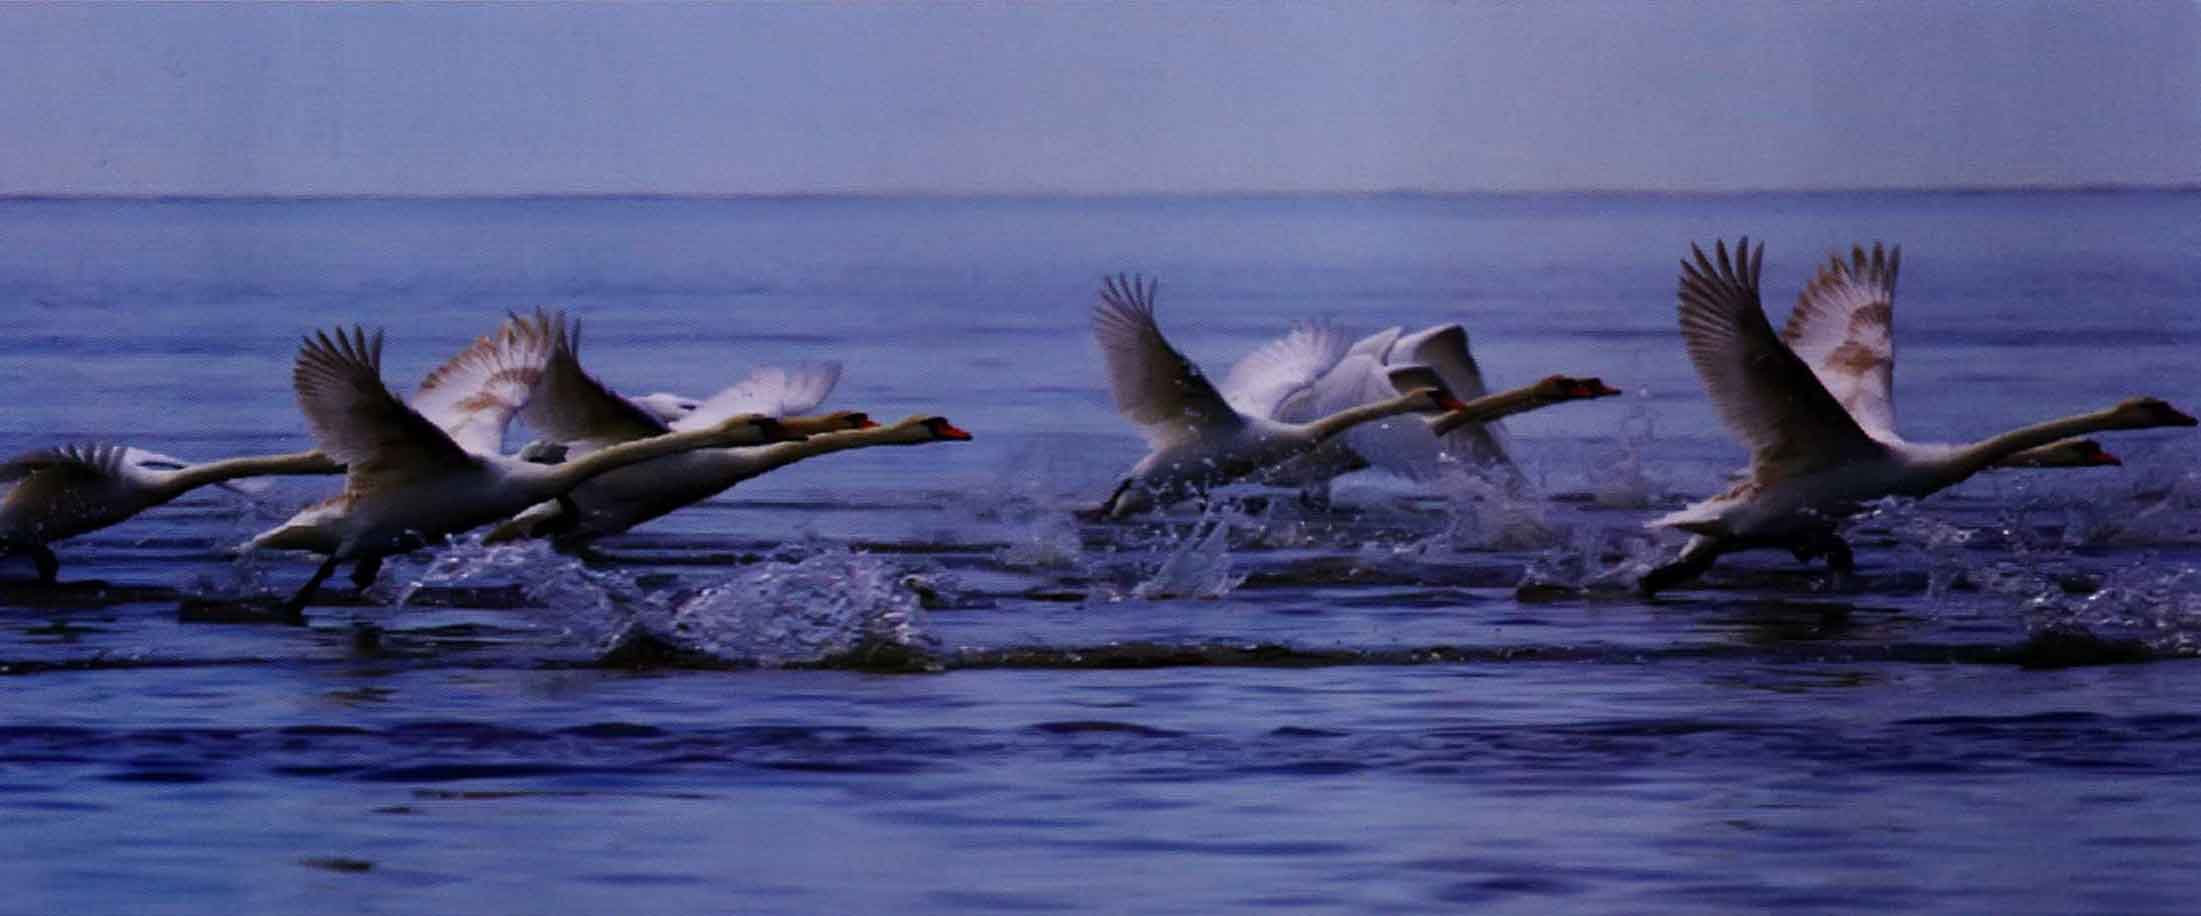 Лебеди-шипуны берут разбег по воде, прежде чем подняться в воздух.